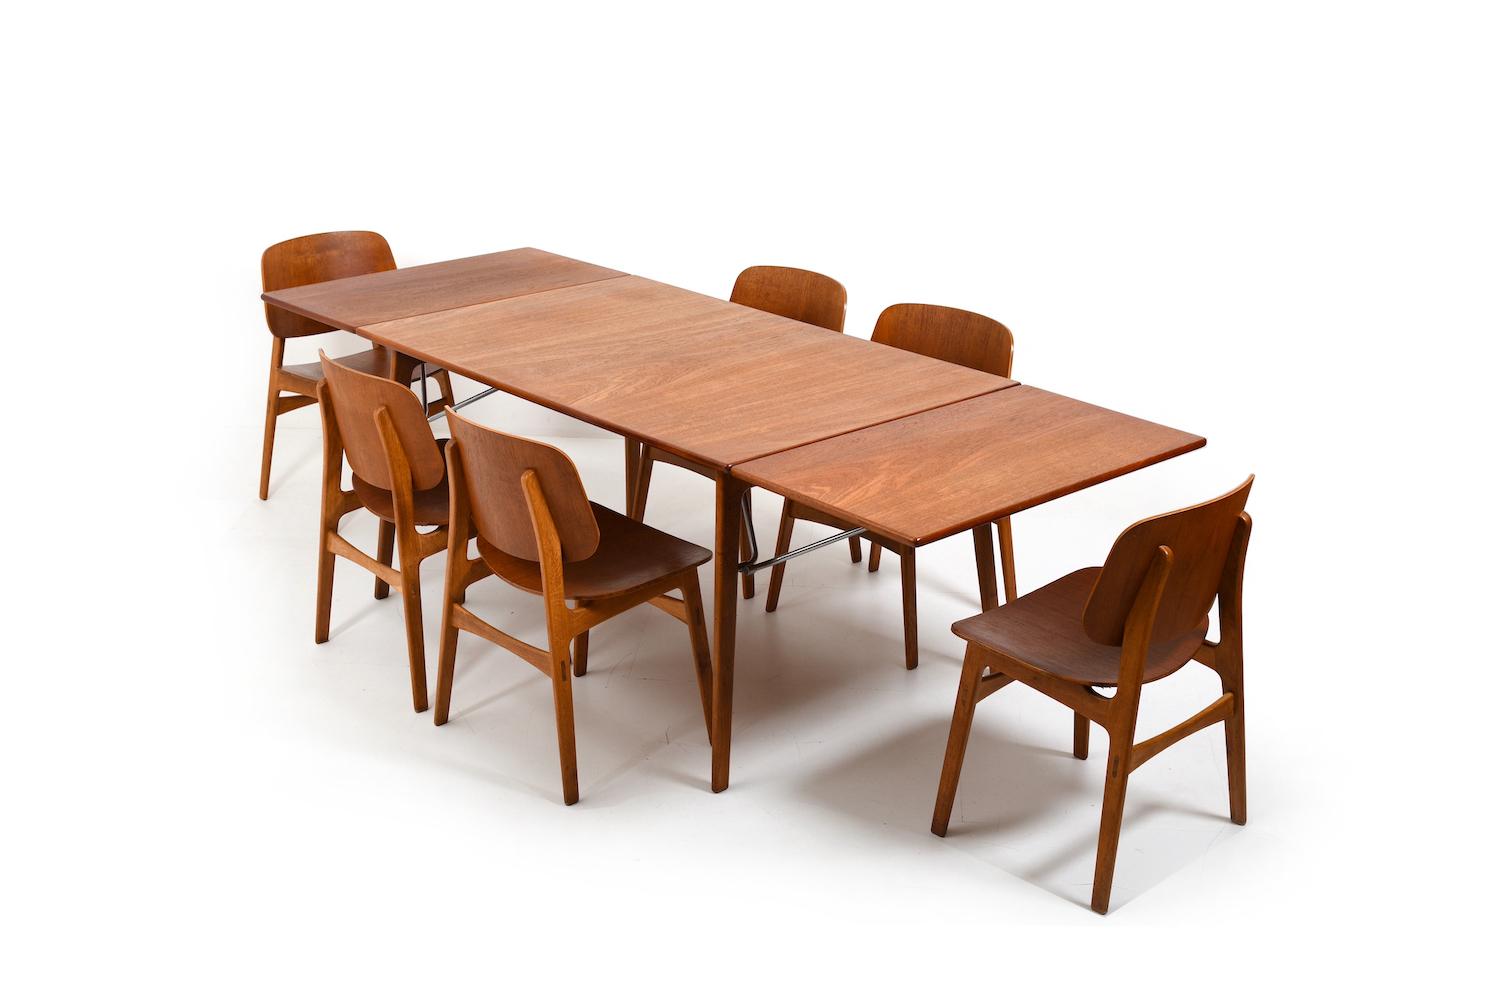 Schöne Vintage Børge Mogensen Esstischgarnitur bestehend aus einem Tisch mod. 162 und Esszimmerstühlen Mod. 155. Hergestellt aus ausgewähltem Teakholz und Eiche. Mit Metallstreben unter der Tischplatte. Diese dienen auch dazu, den Tisch zu erweitern